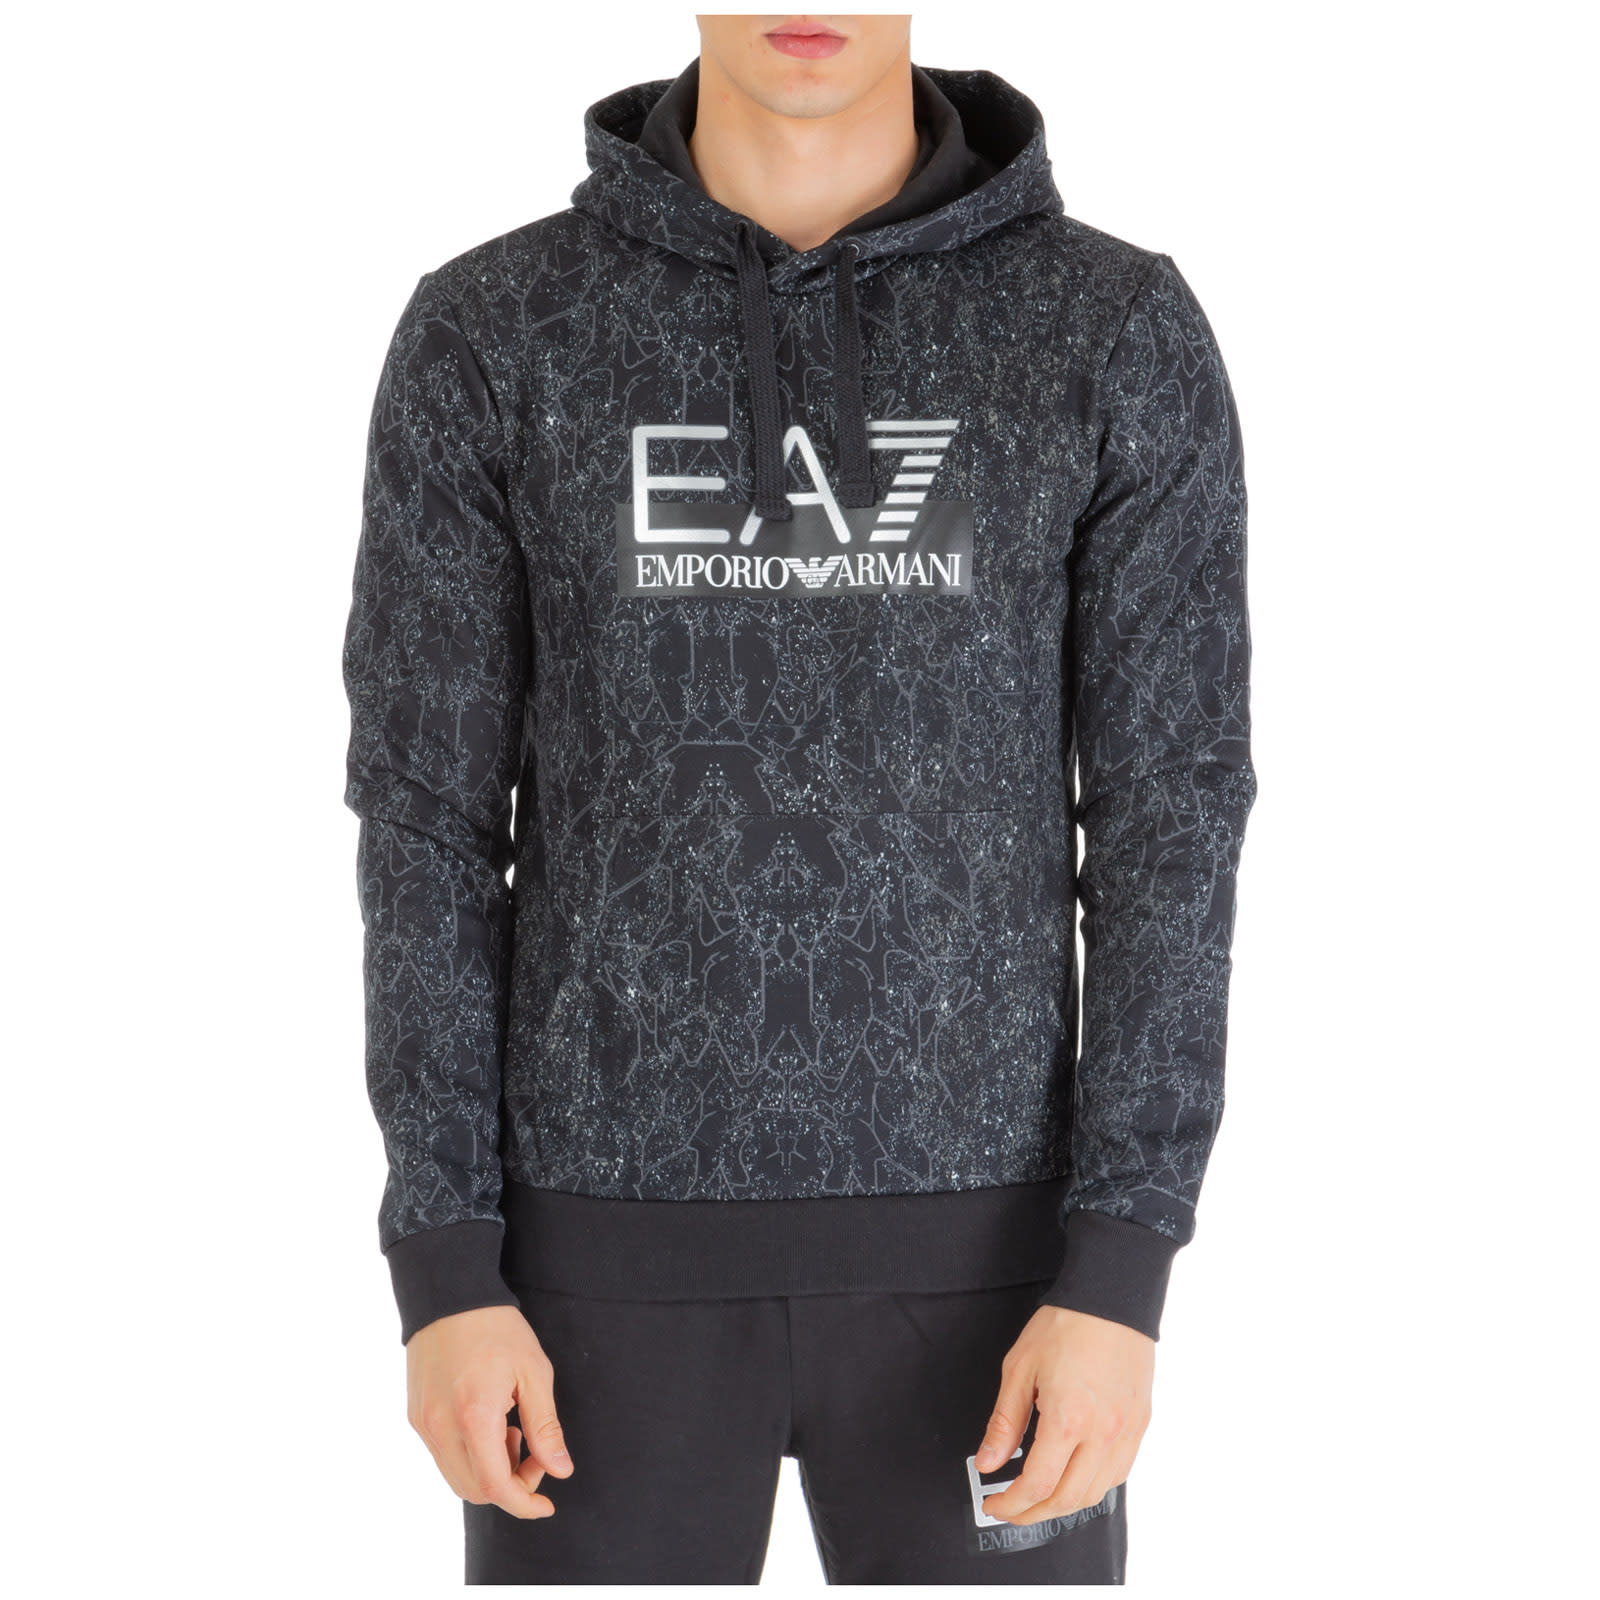 ea7 grey hoodie